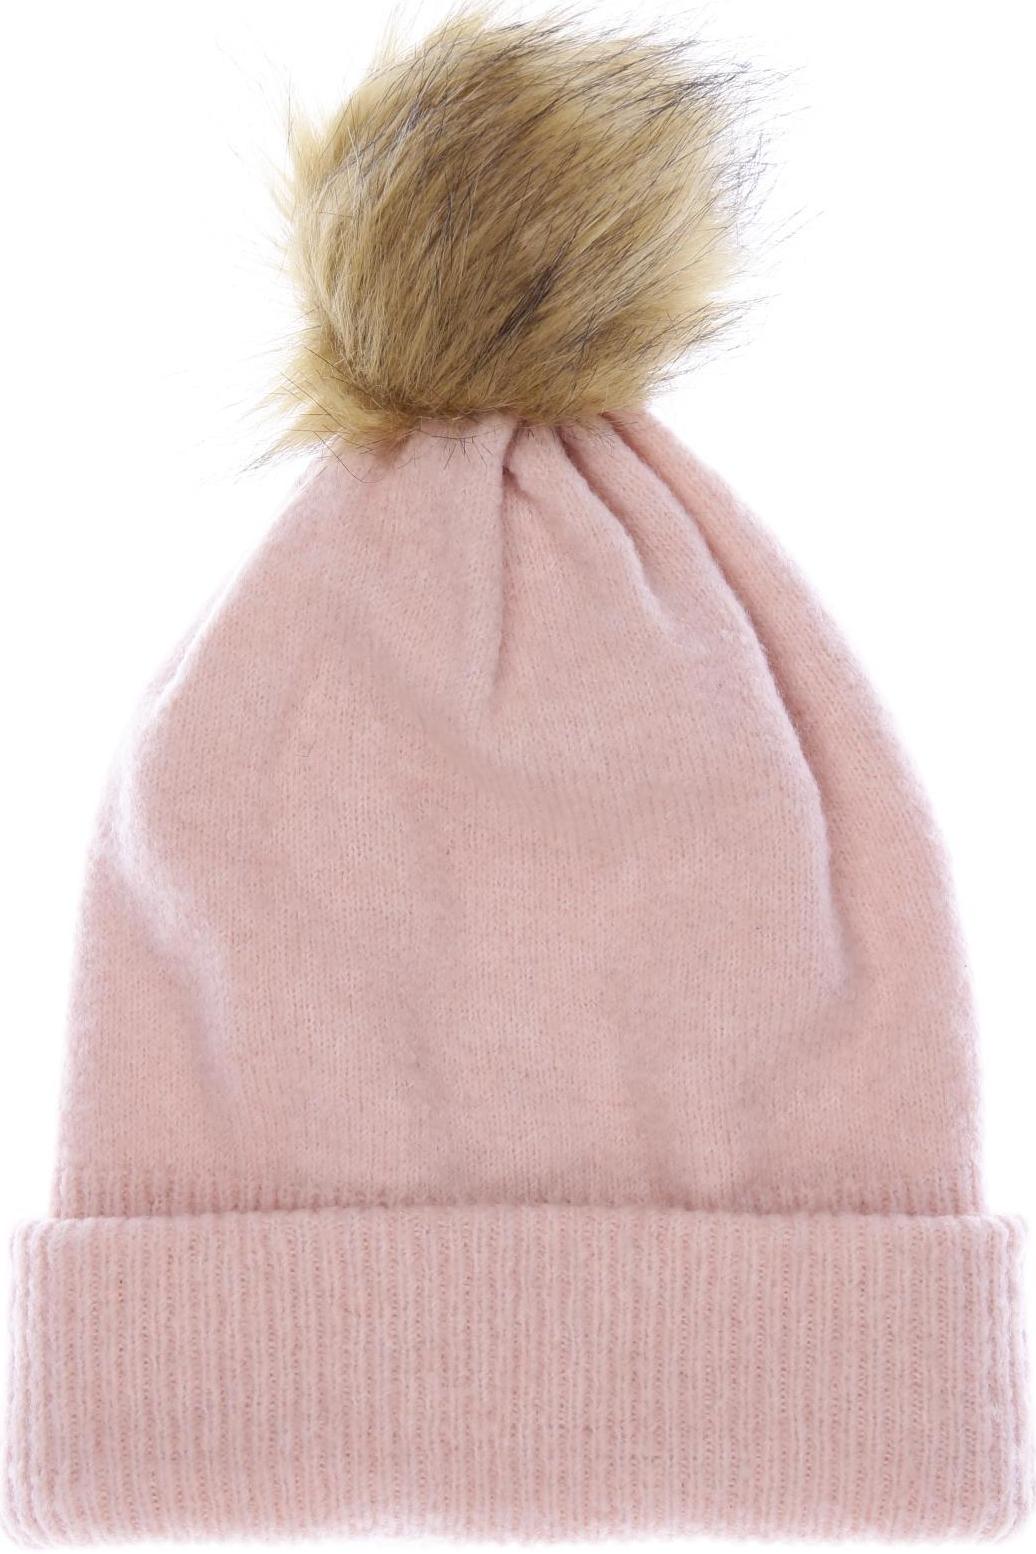 ONLY Damen Hut/Mütze, pink von Only